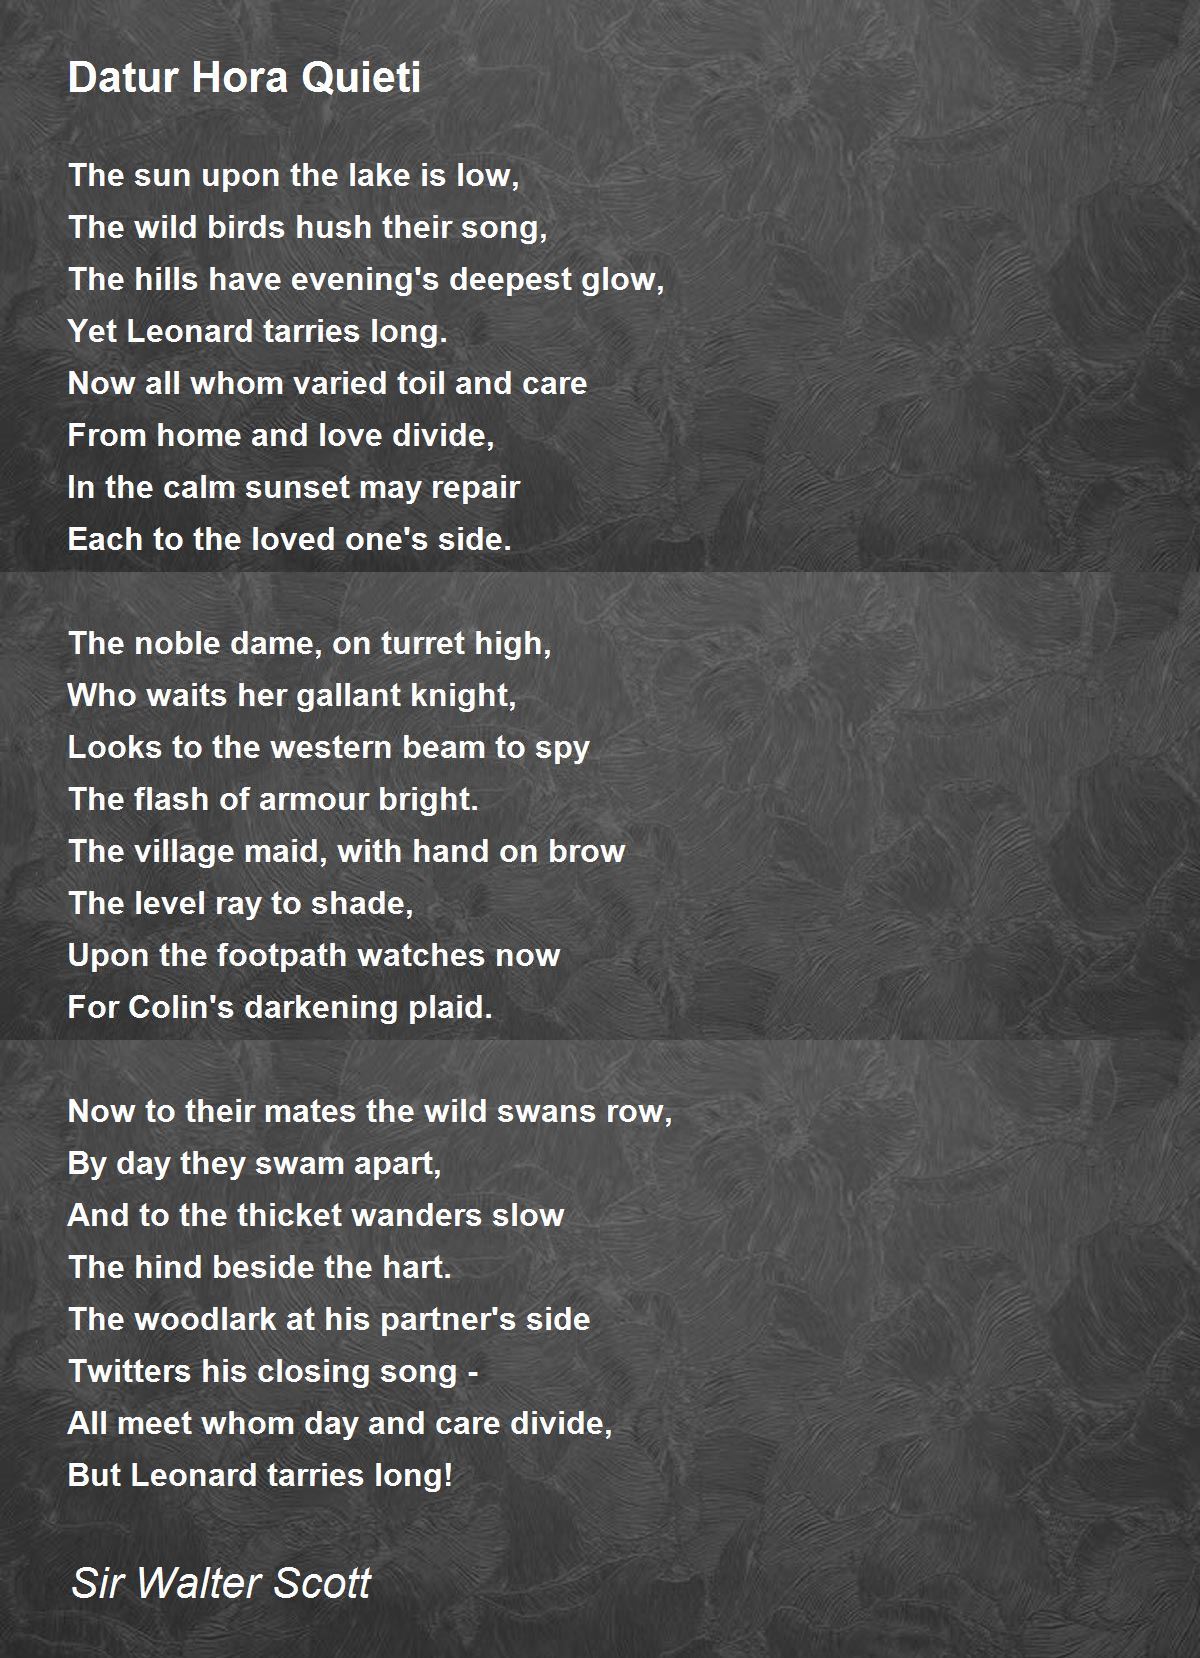 Datur Hora Quieti Poem by Sir Walter Scott - Poem Hunter